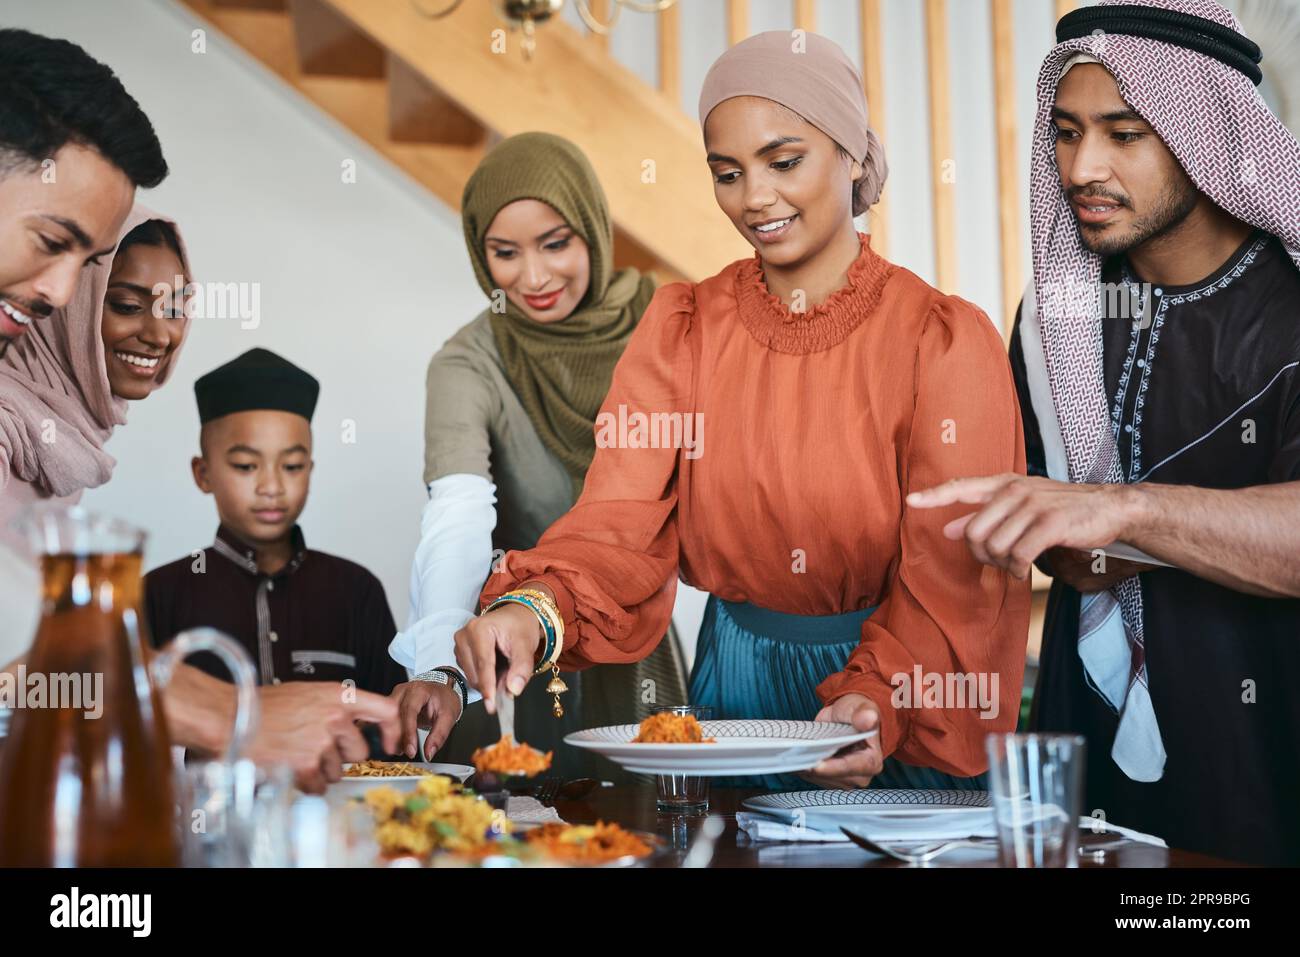 Riempi il tuo piatto. Una famiglia musulmana che si diverte a pranzo. Foto Stock